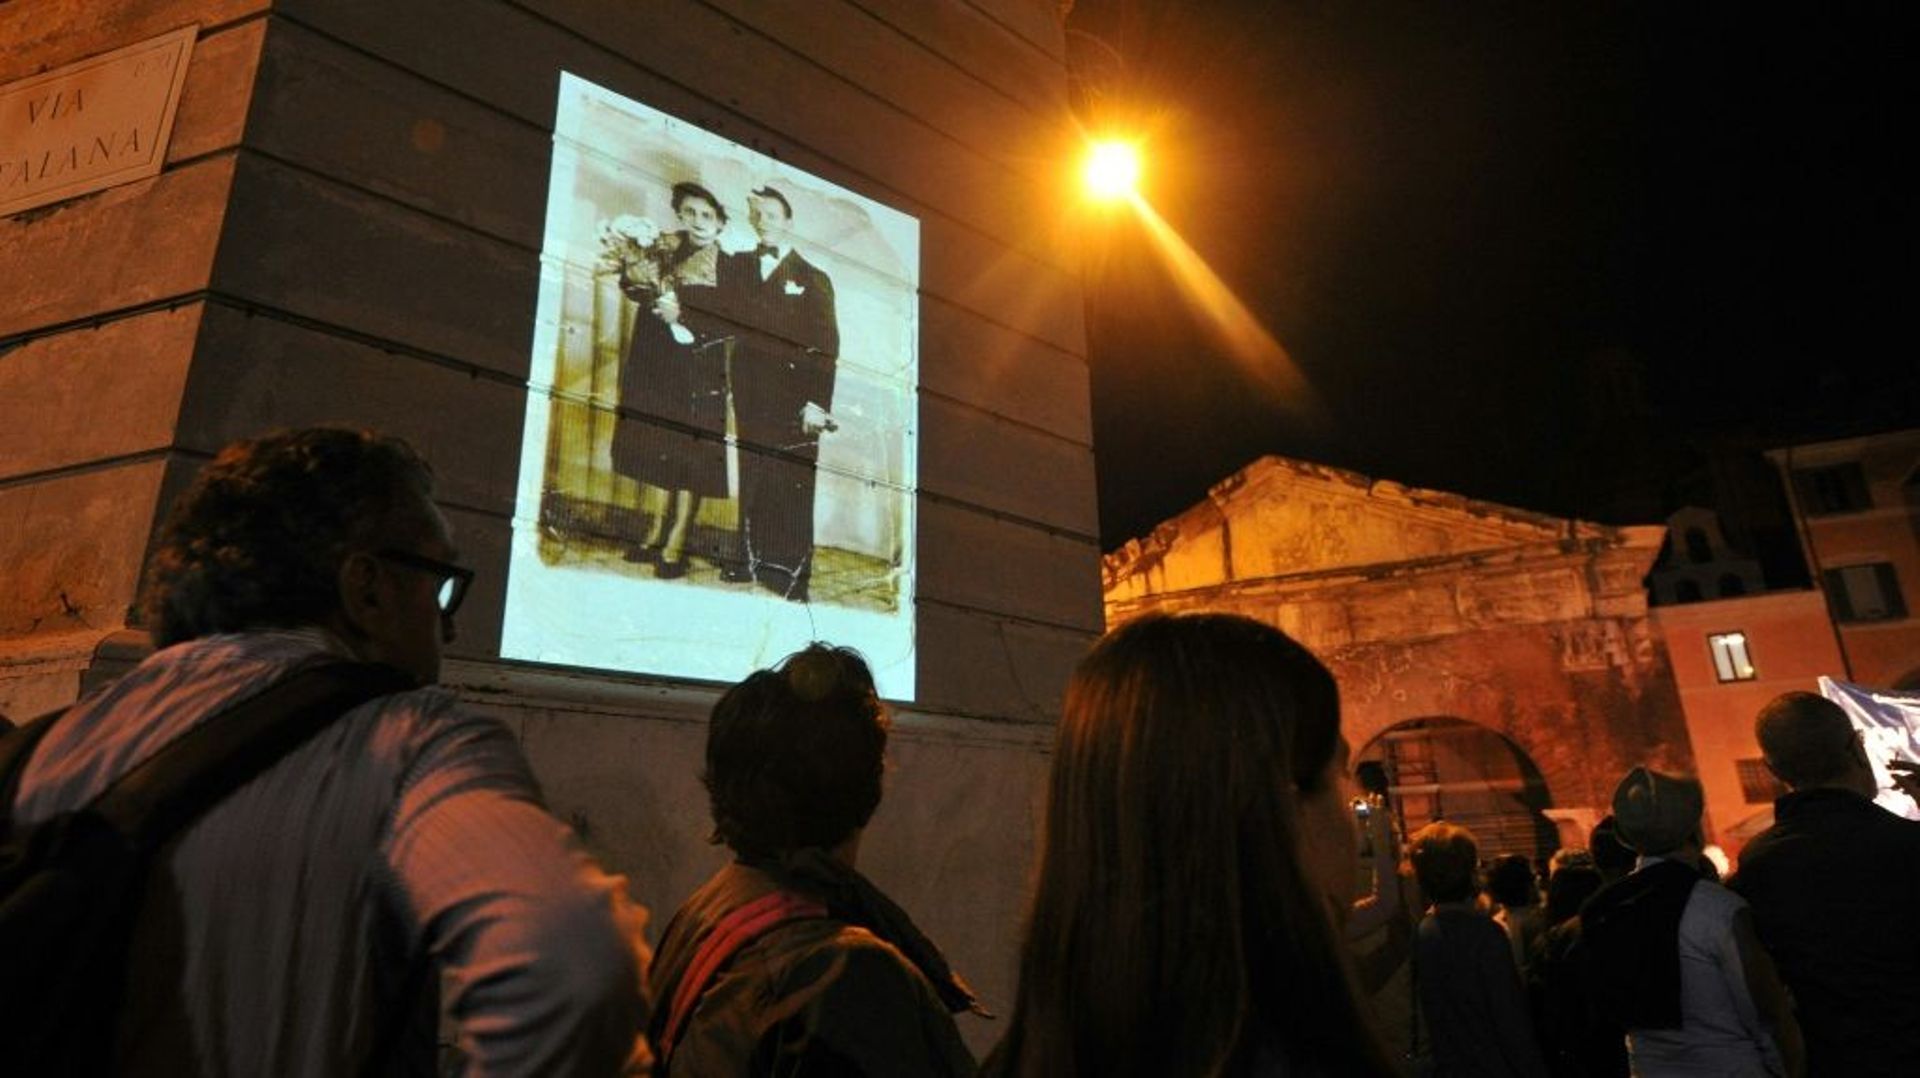 Une photo de personnes déportées est projetée sur un mur lors d’une marche silencieuse en mémoire des victimes de la rafle du ghetto de Rome, le 16 octobre 2013.